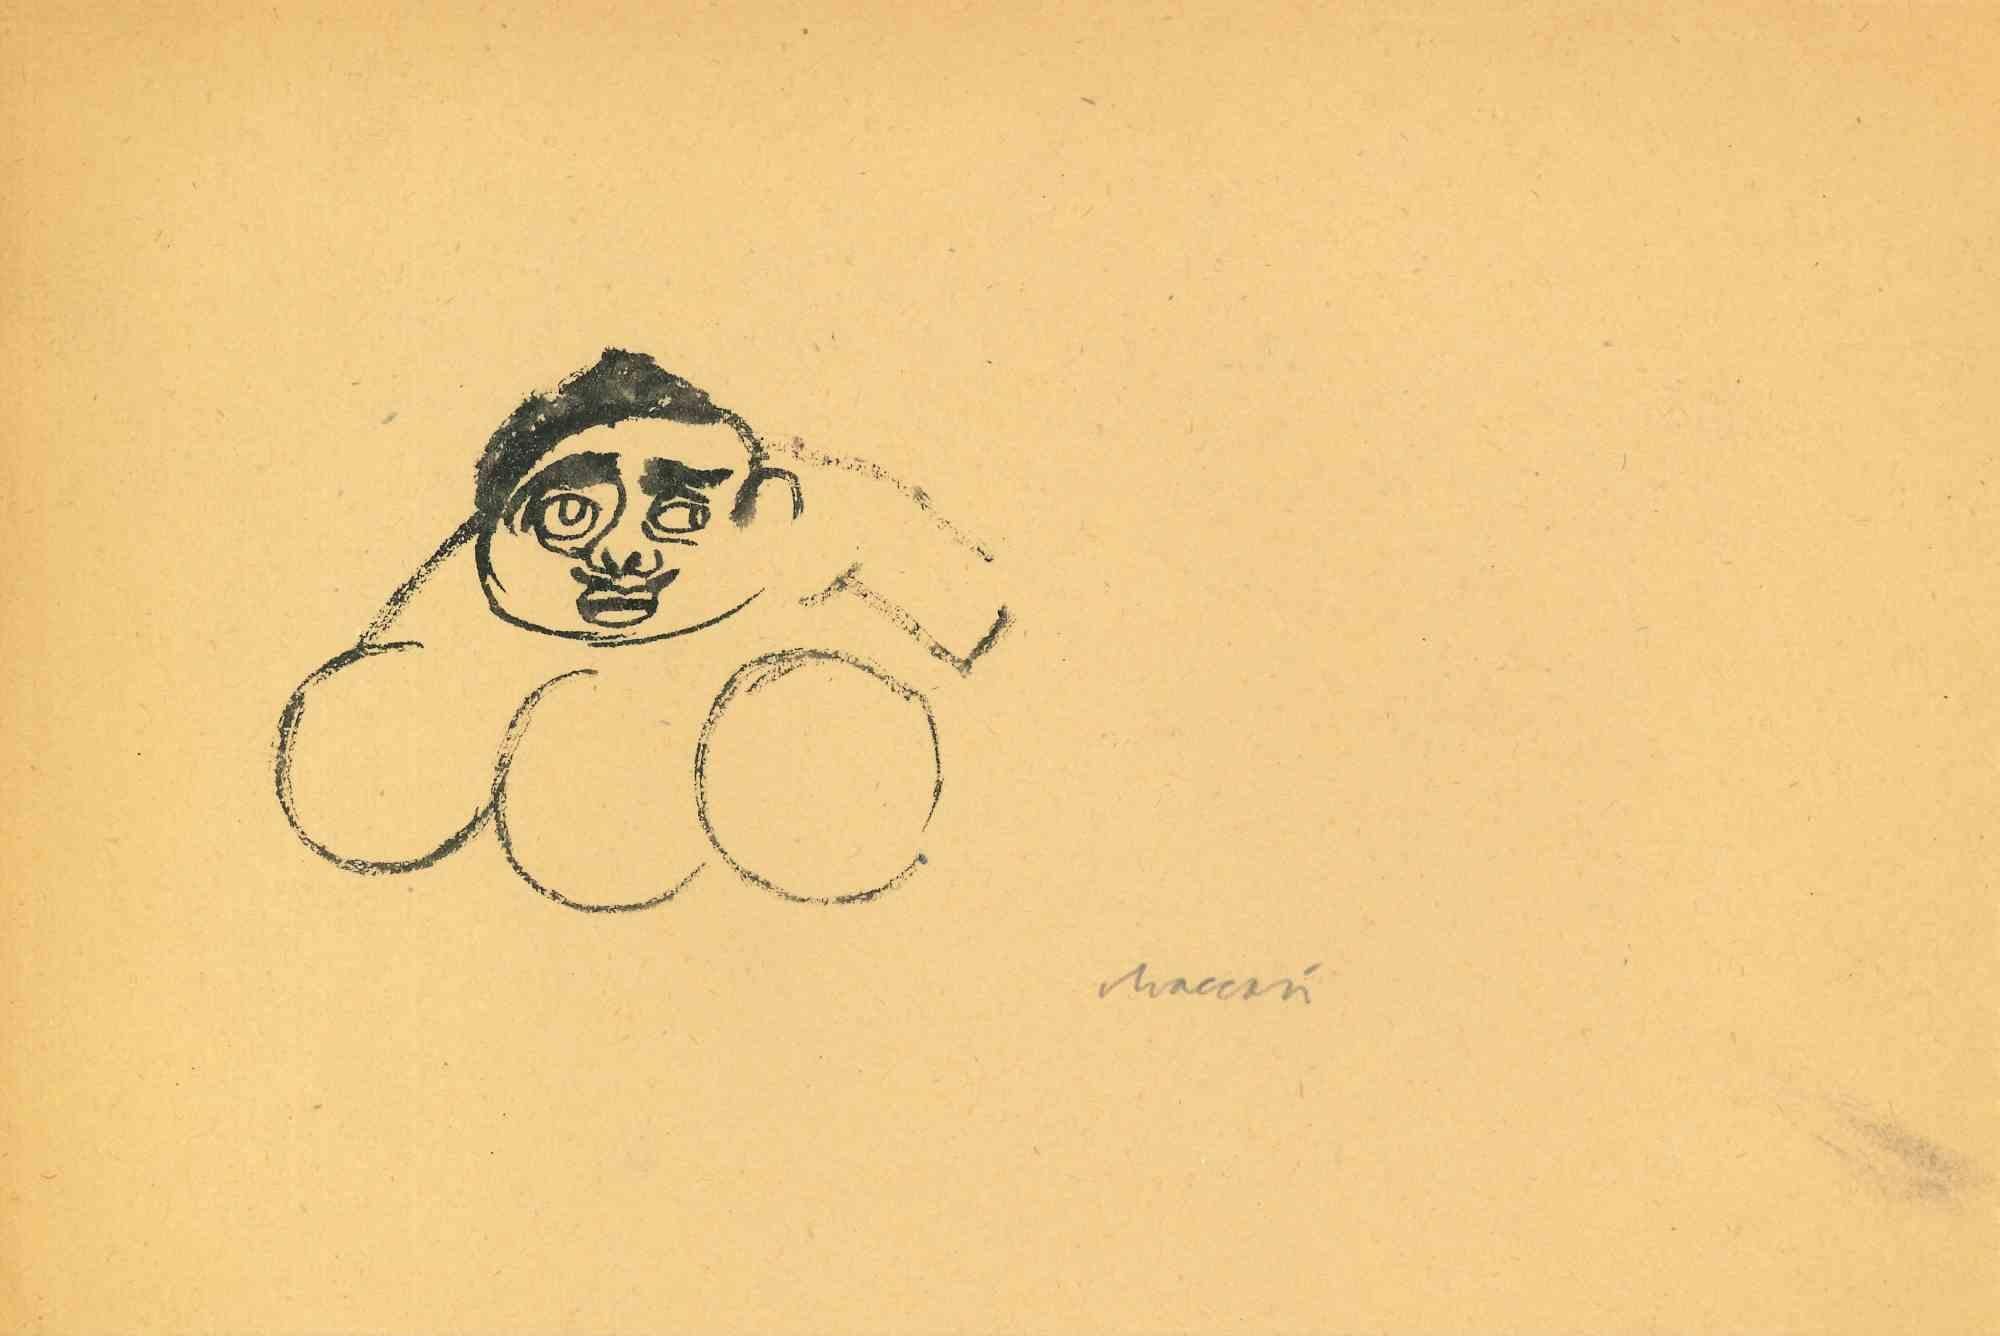 Porträt ist eine Aquarellzeichnung von Mino Maccari (1924-1989) aus der Mitte des 20. Jahrhunderts.

Handsigniert.

Guter Zustand mit leichten Stockflecken.

Mino Maccari (Siena, 1924-Rom, 16. Juni 1989) war ein italienischer Schriftsteller, Maler,